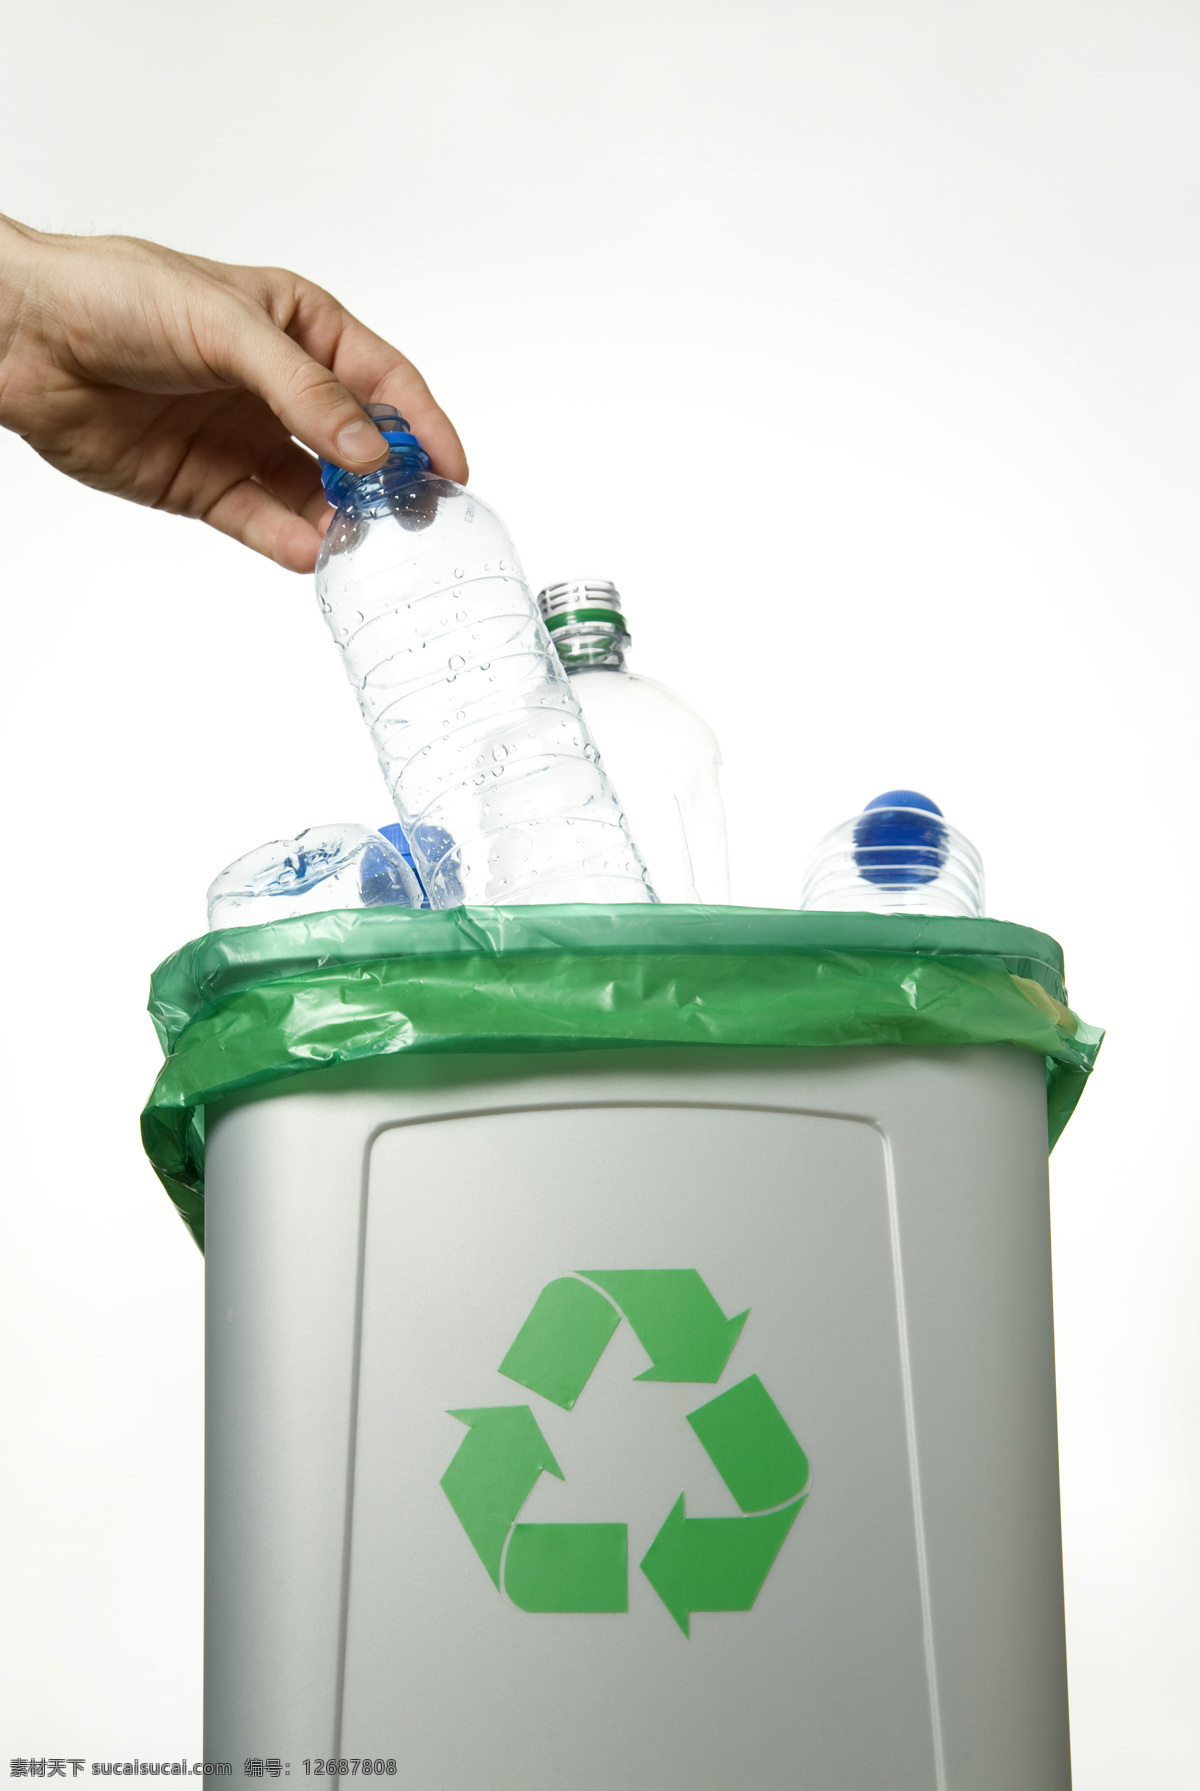 垃圾桶 回收利用 丢瓶子 矿泉水瓶 废品回收 循环能源 环保主题 能源节能环保 生活百科